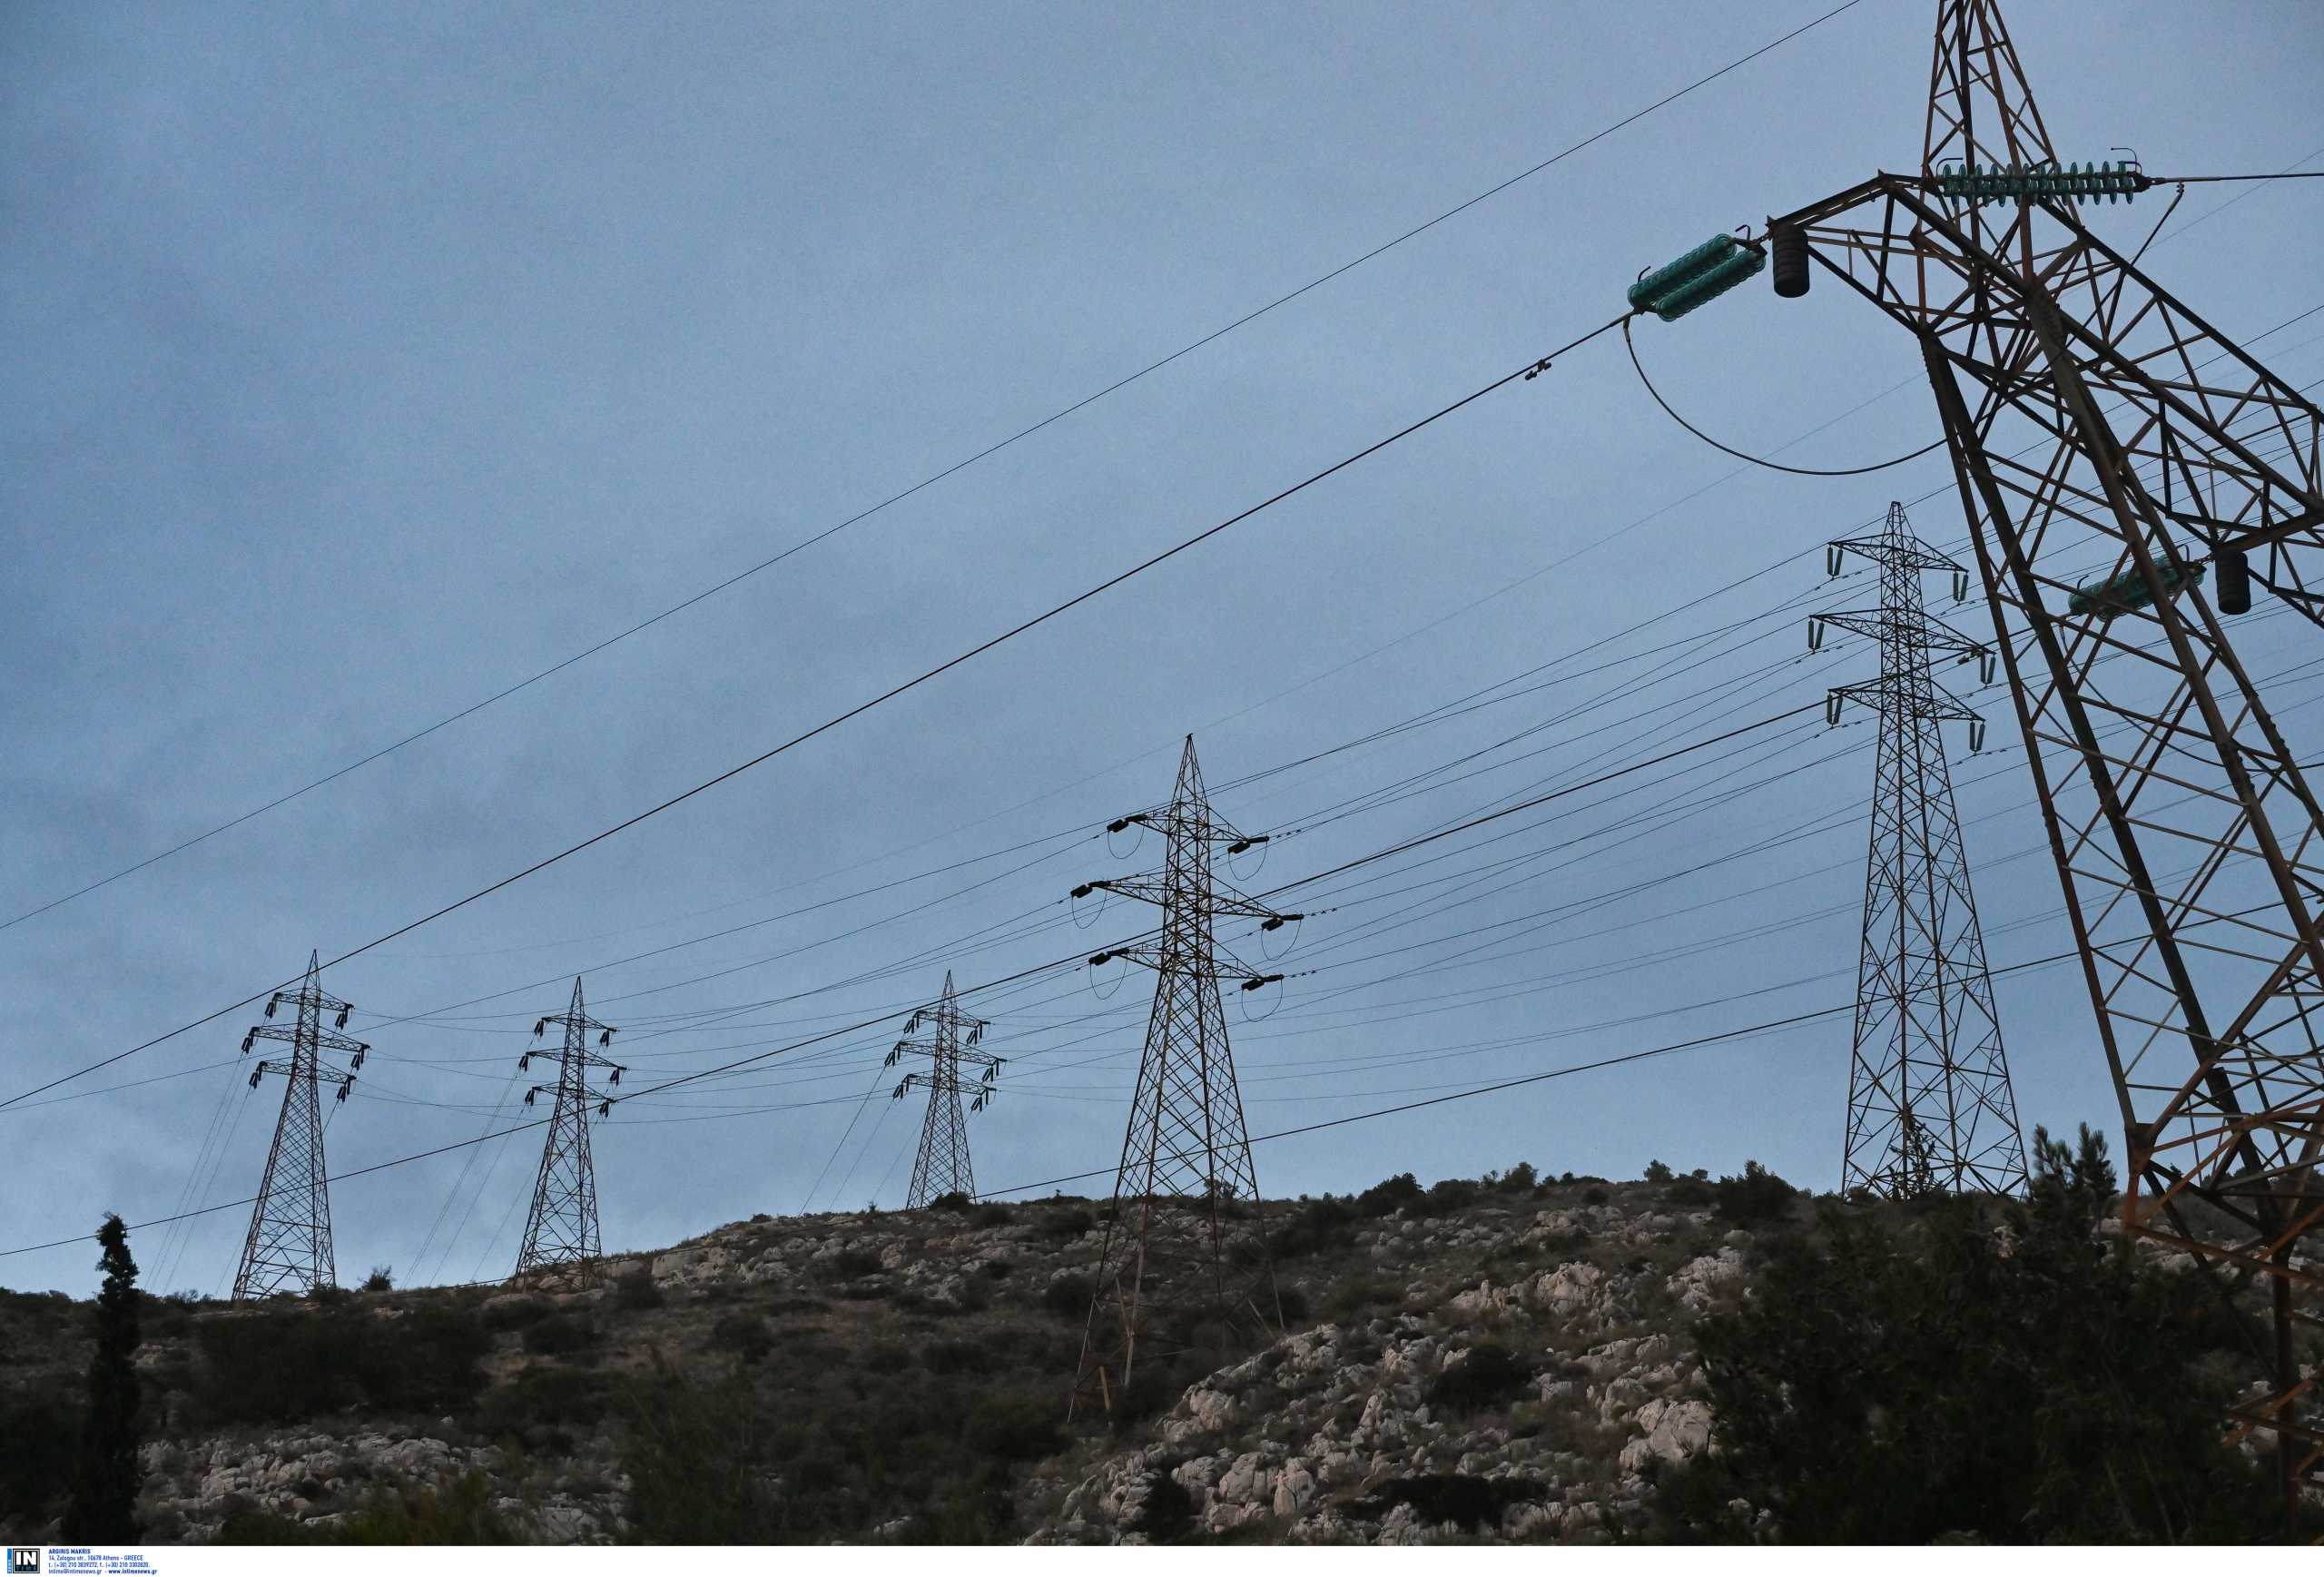 ΑΔΜΗΕ: Θωρακίζει το Σύστημα Μεταφοράς Ηλεκτρικής Ενέργειας, ενόψει του κύματος κακοκαιρίας